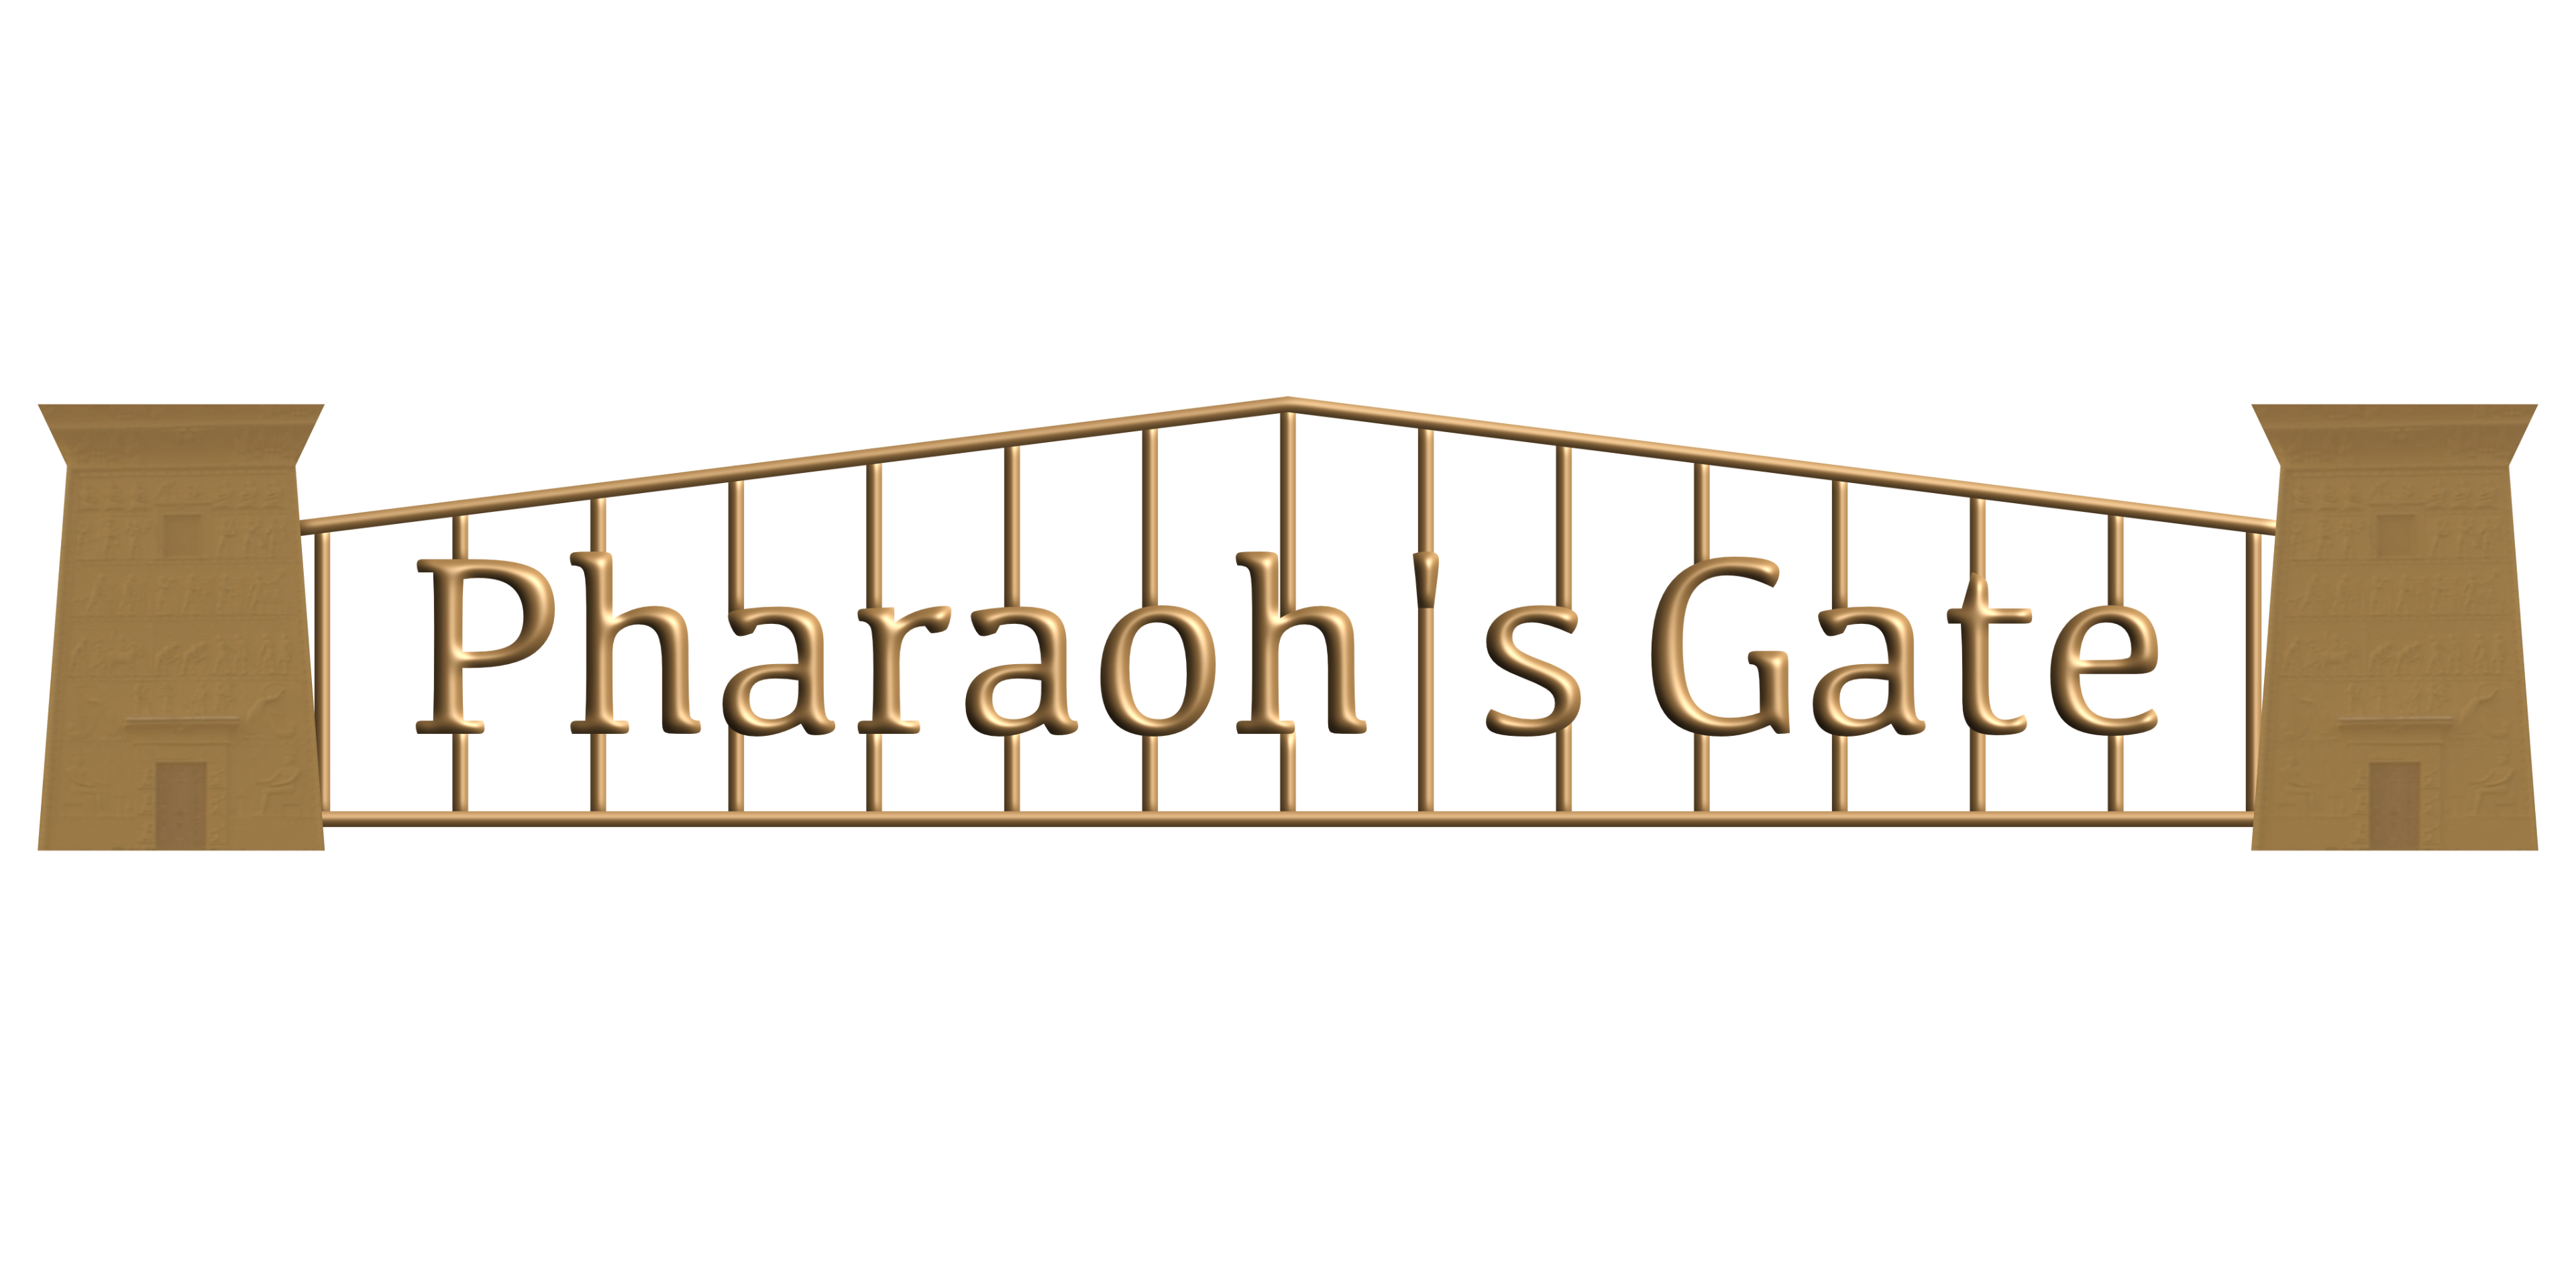 Pharaoh's Gate